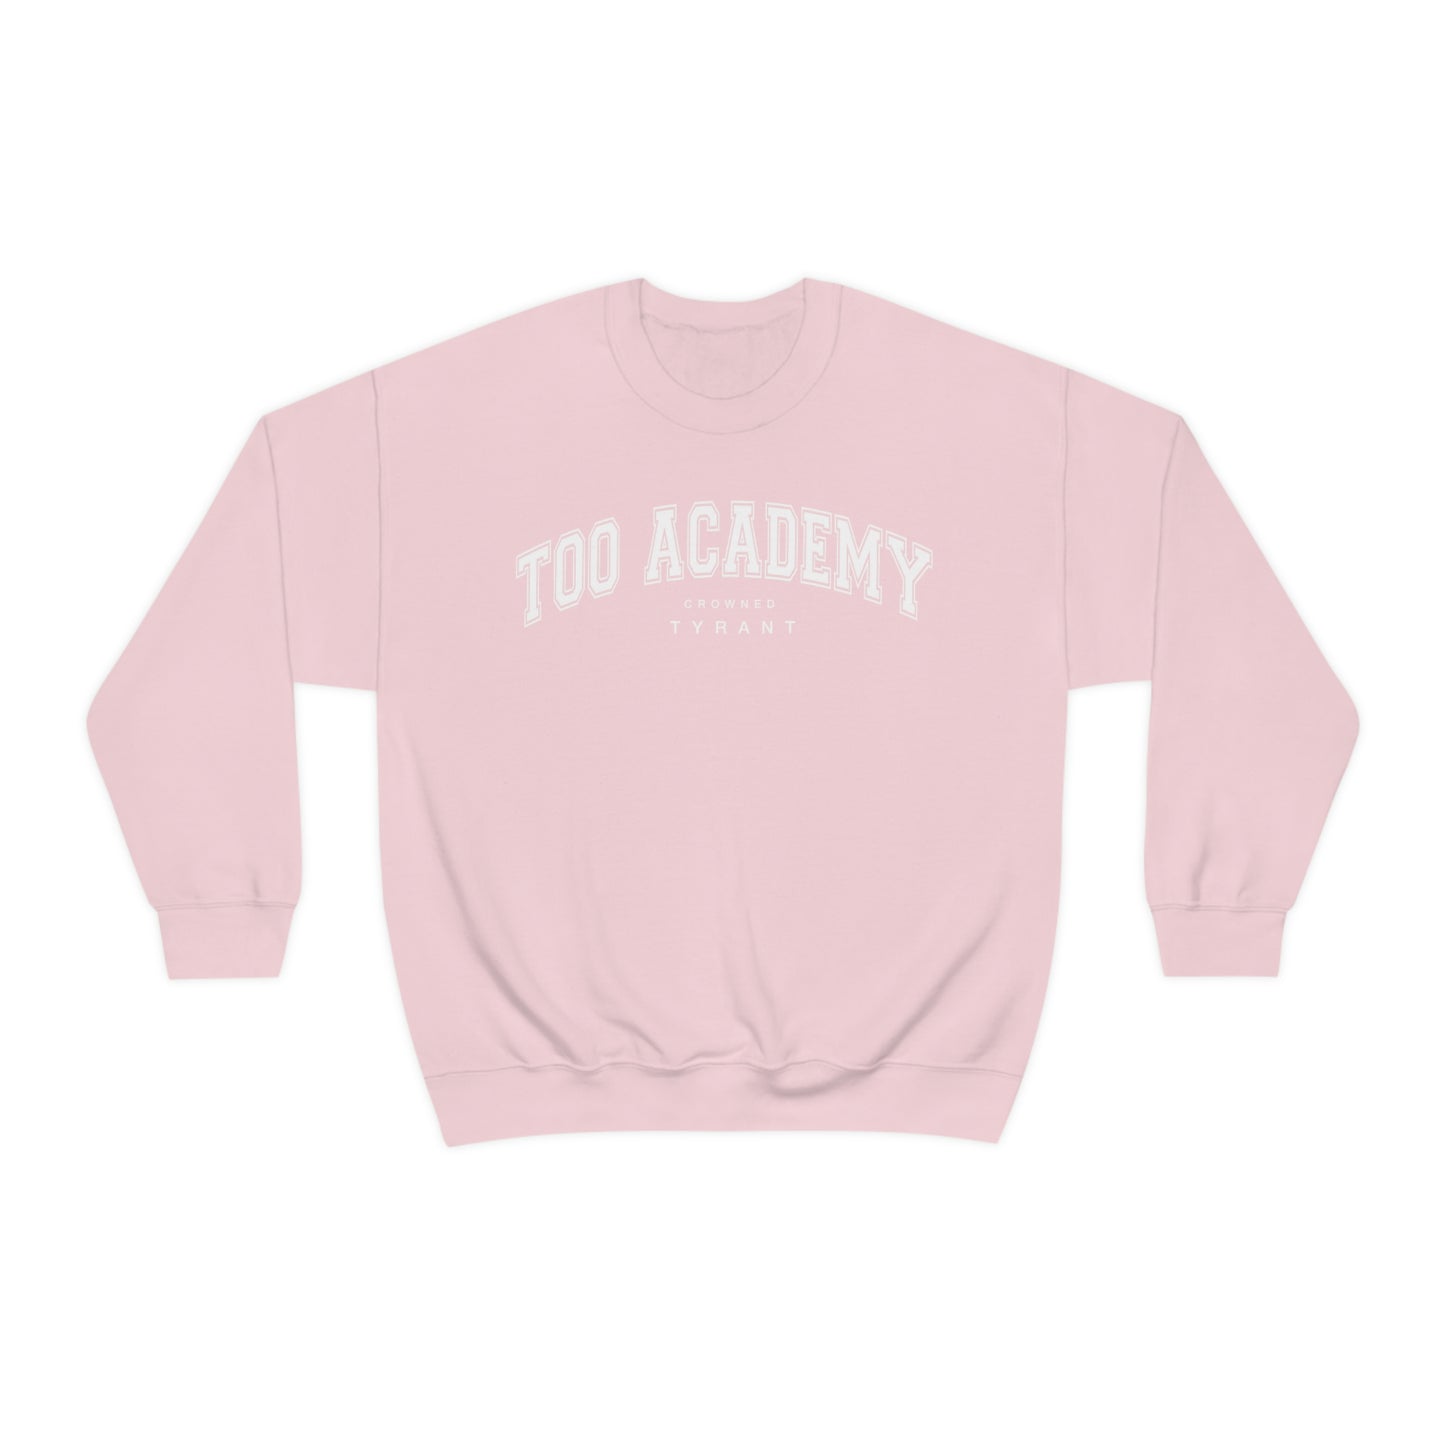 Too academy sweatshirt crew neck Tyrant